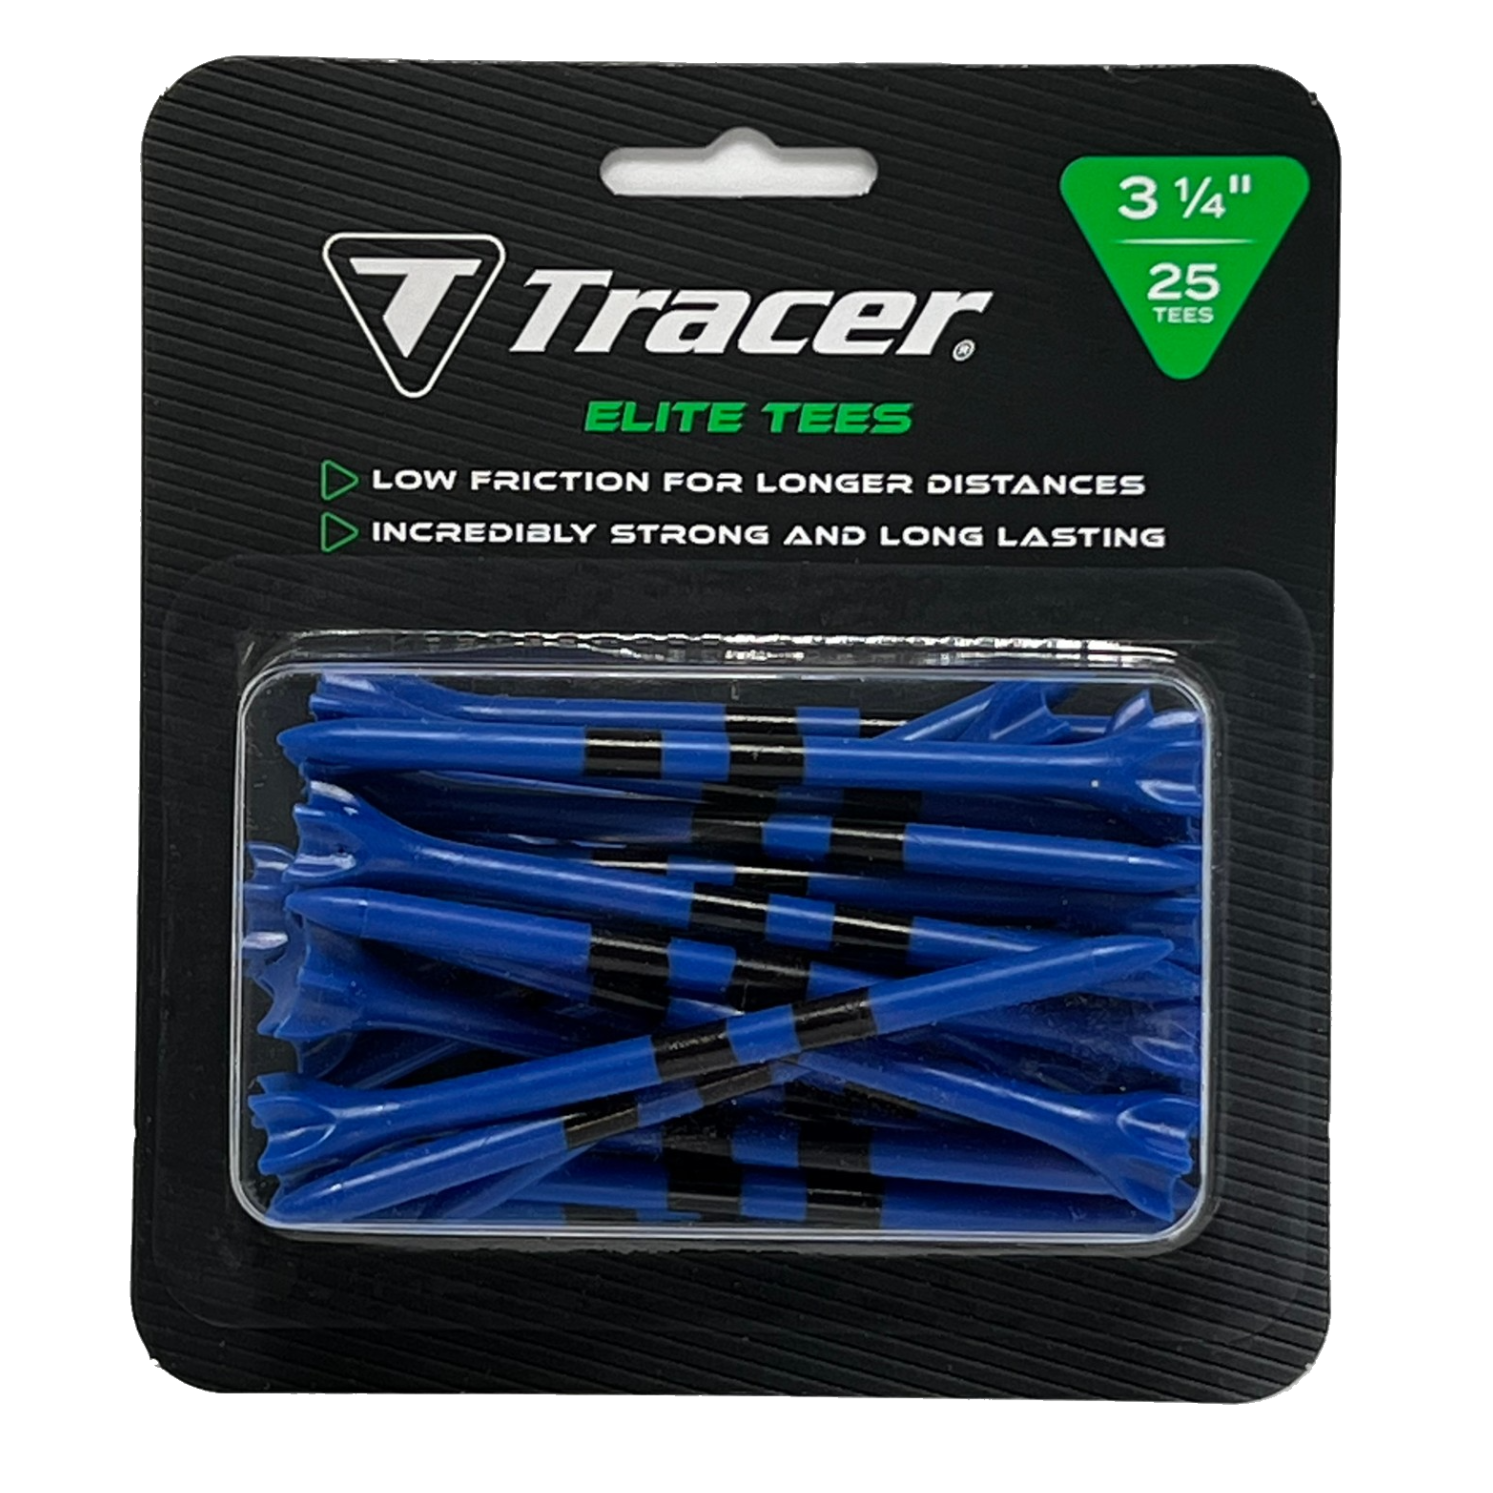 Tracer 3 1/4", Elite Plastic Tees - Blister Pack